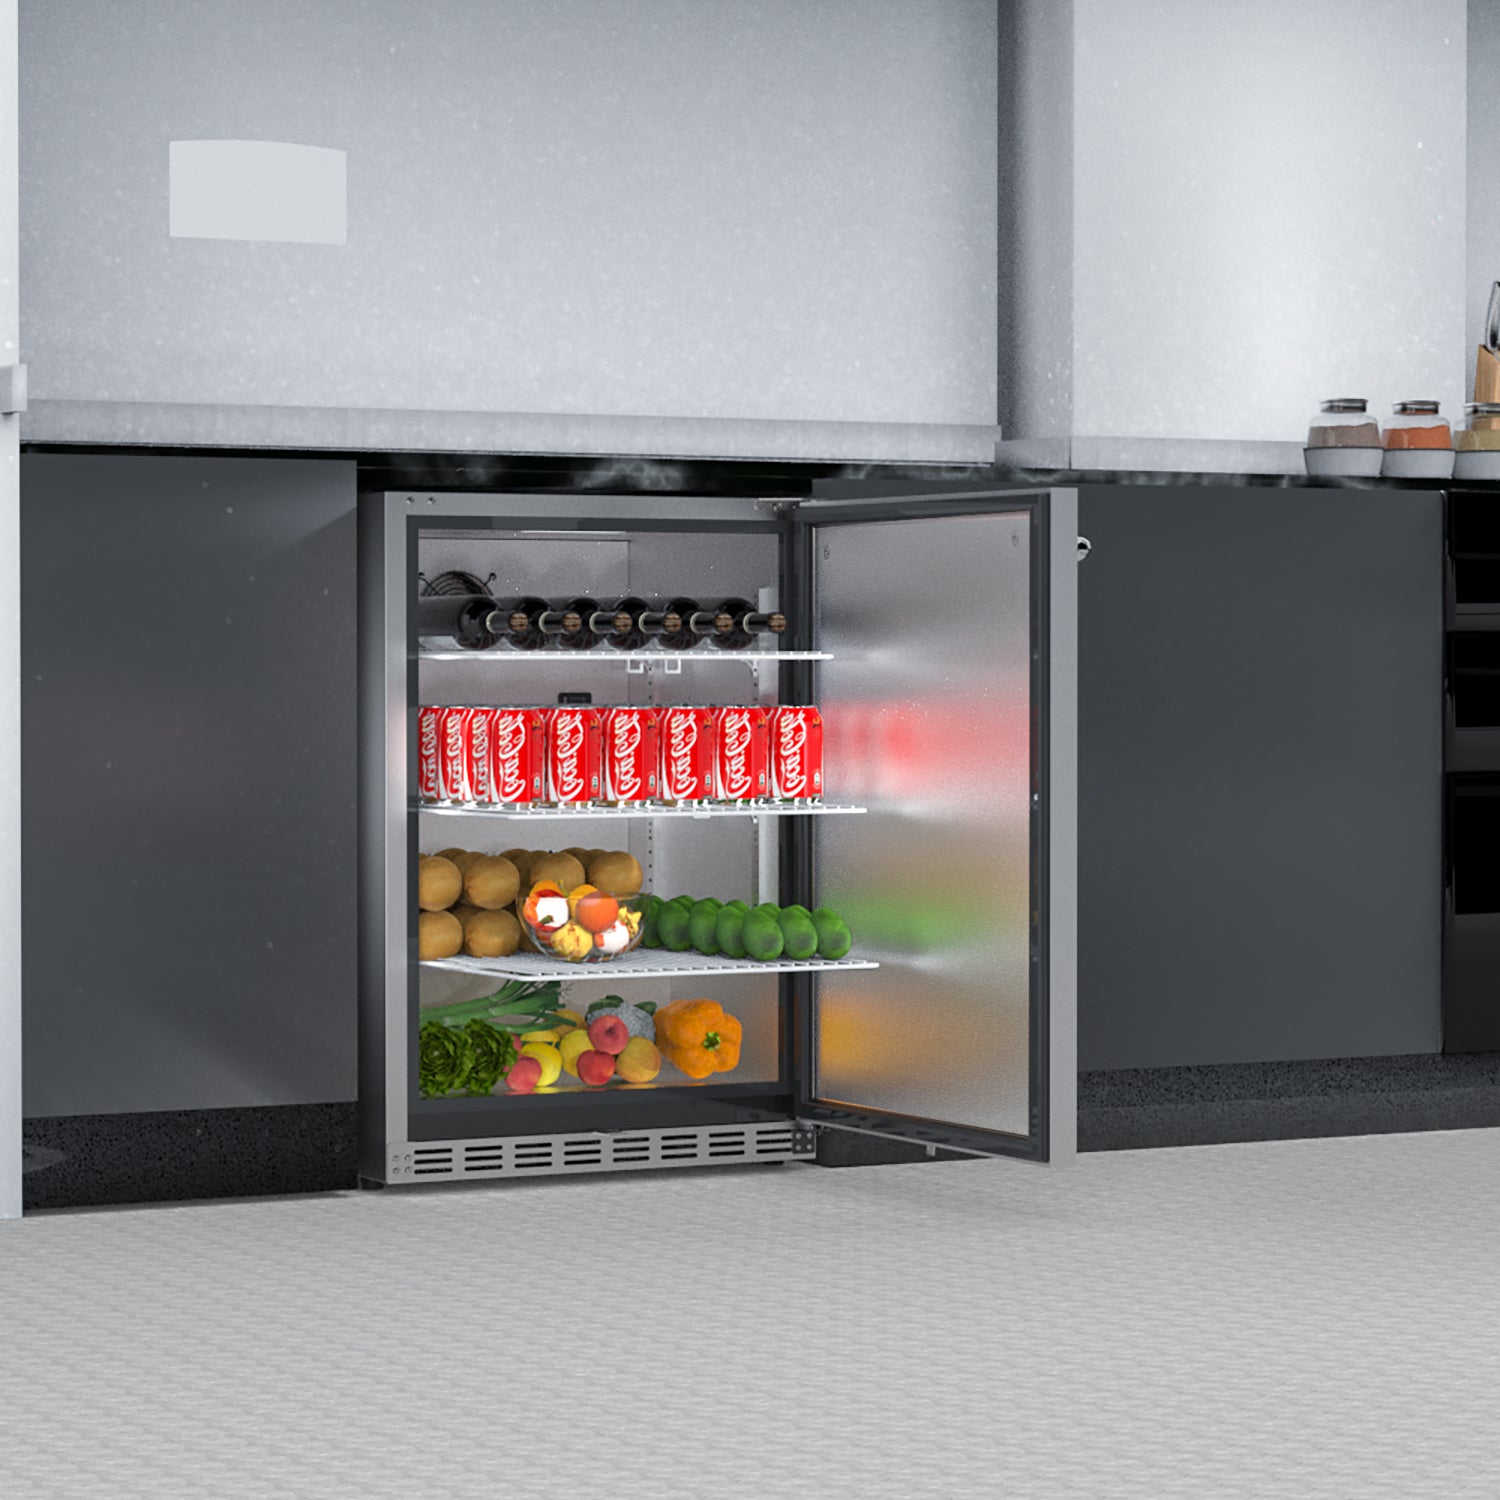 HCK 5.12 Cu.Ft 161 cans Indoor/Outdoor Refrigerator, Built-in Beverage Cooler with Reversible Door, Stainless Steel - C150